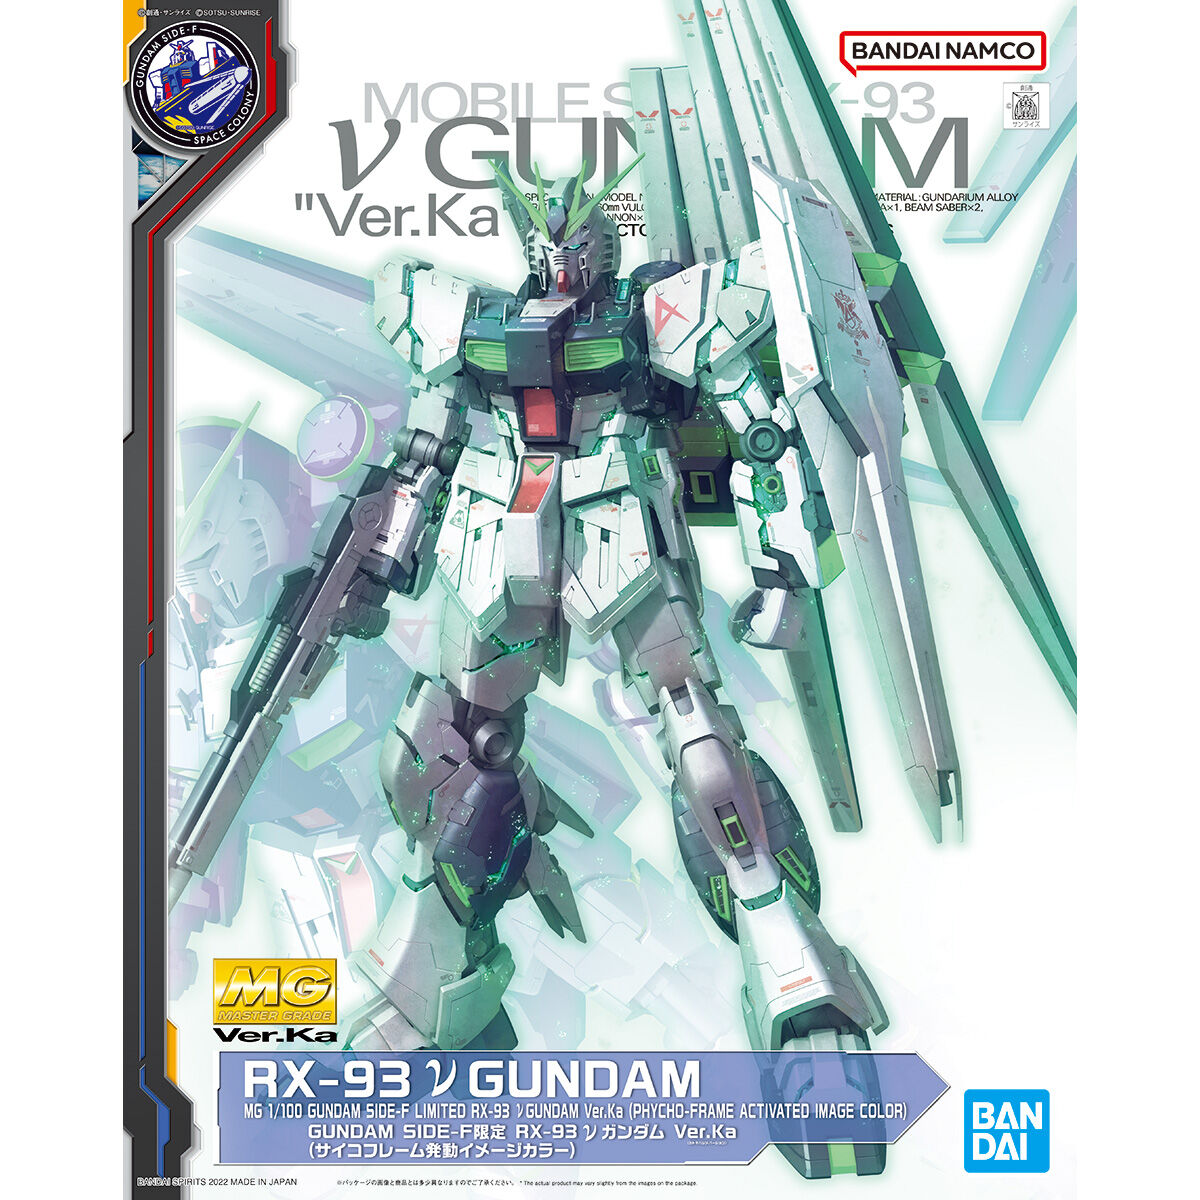 MG 1/100 GUNDAM SIDE-F Limited RX-93 νGundam Ver.Ka (Psychoframe activation image color) *PRE-ORDER*